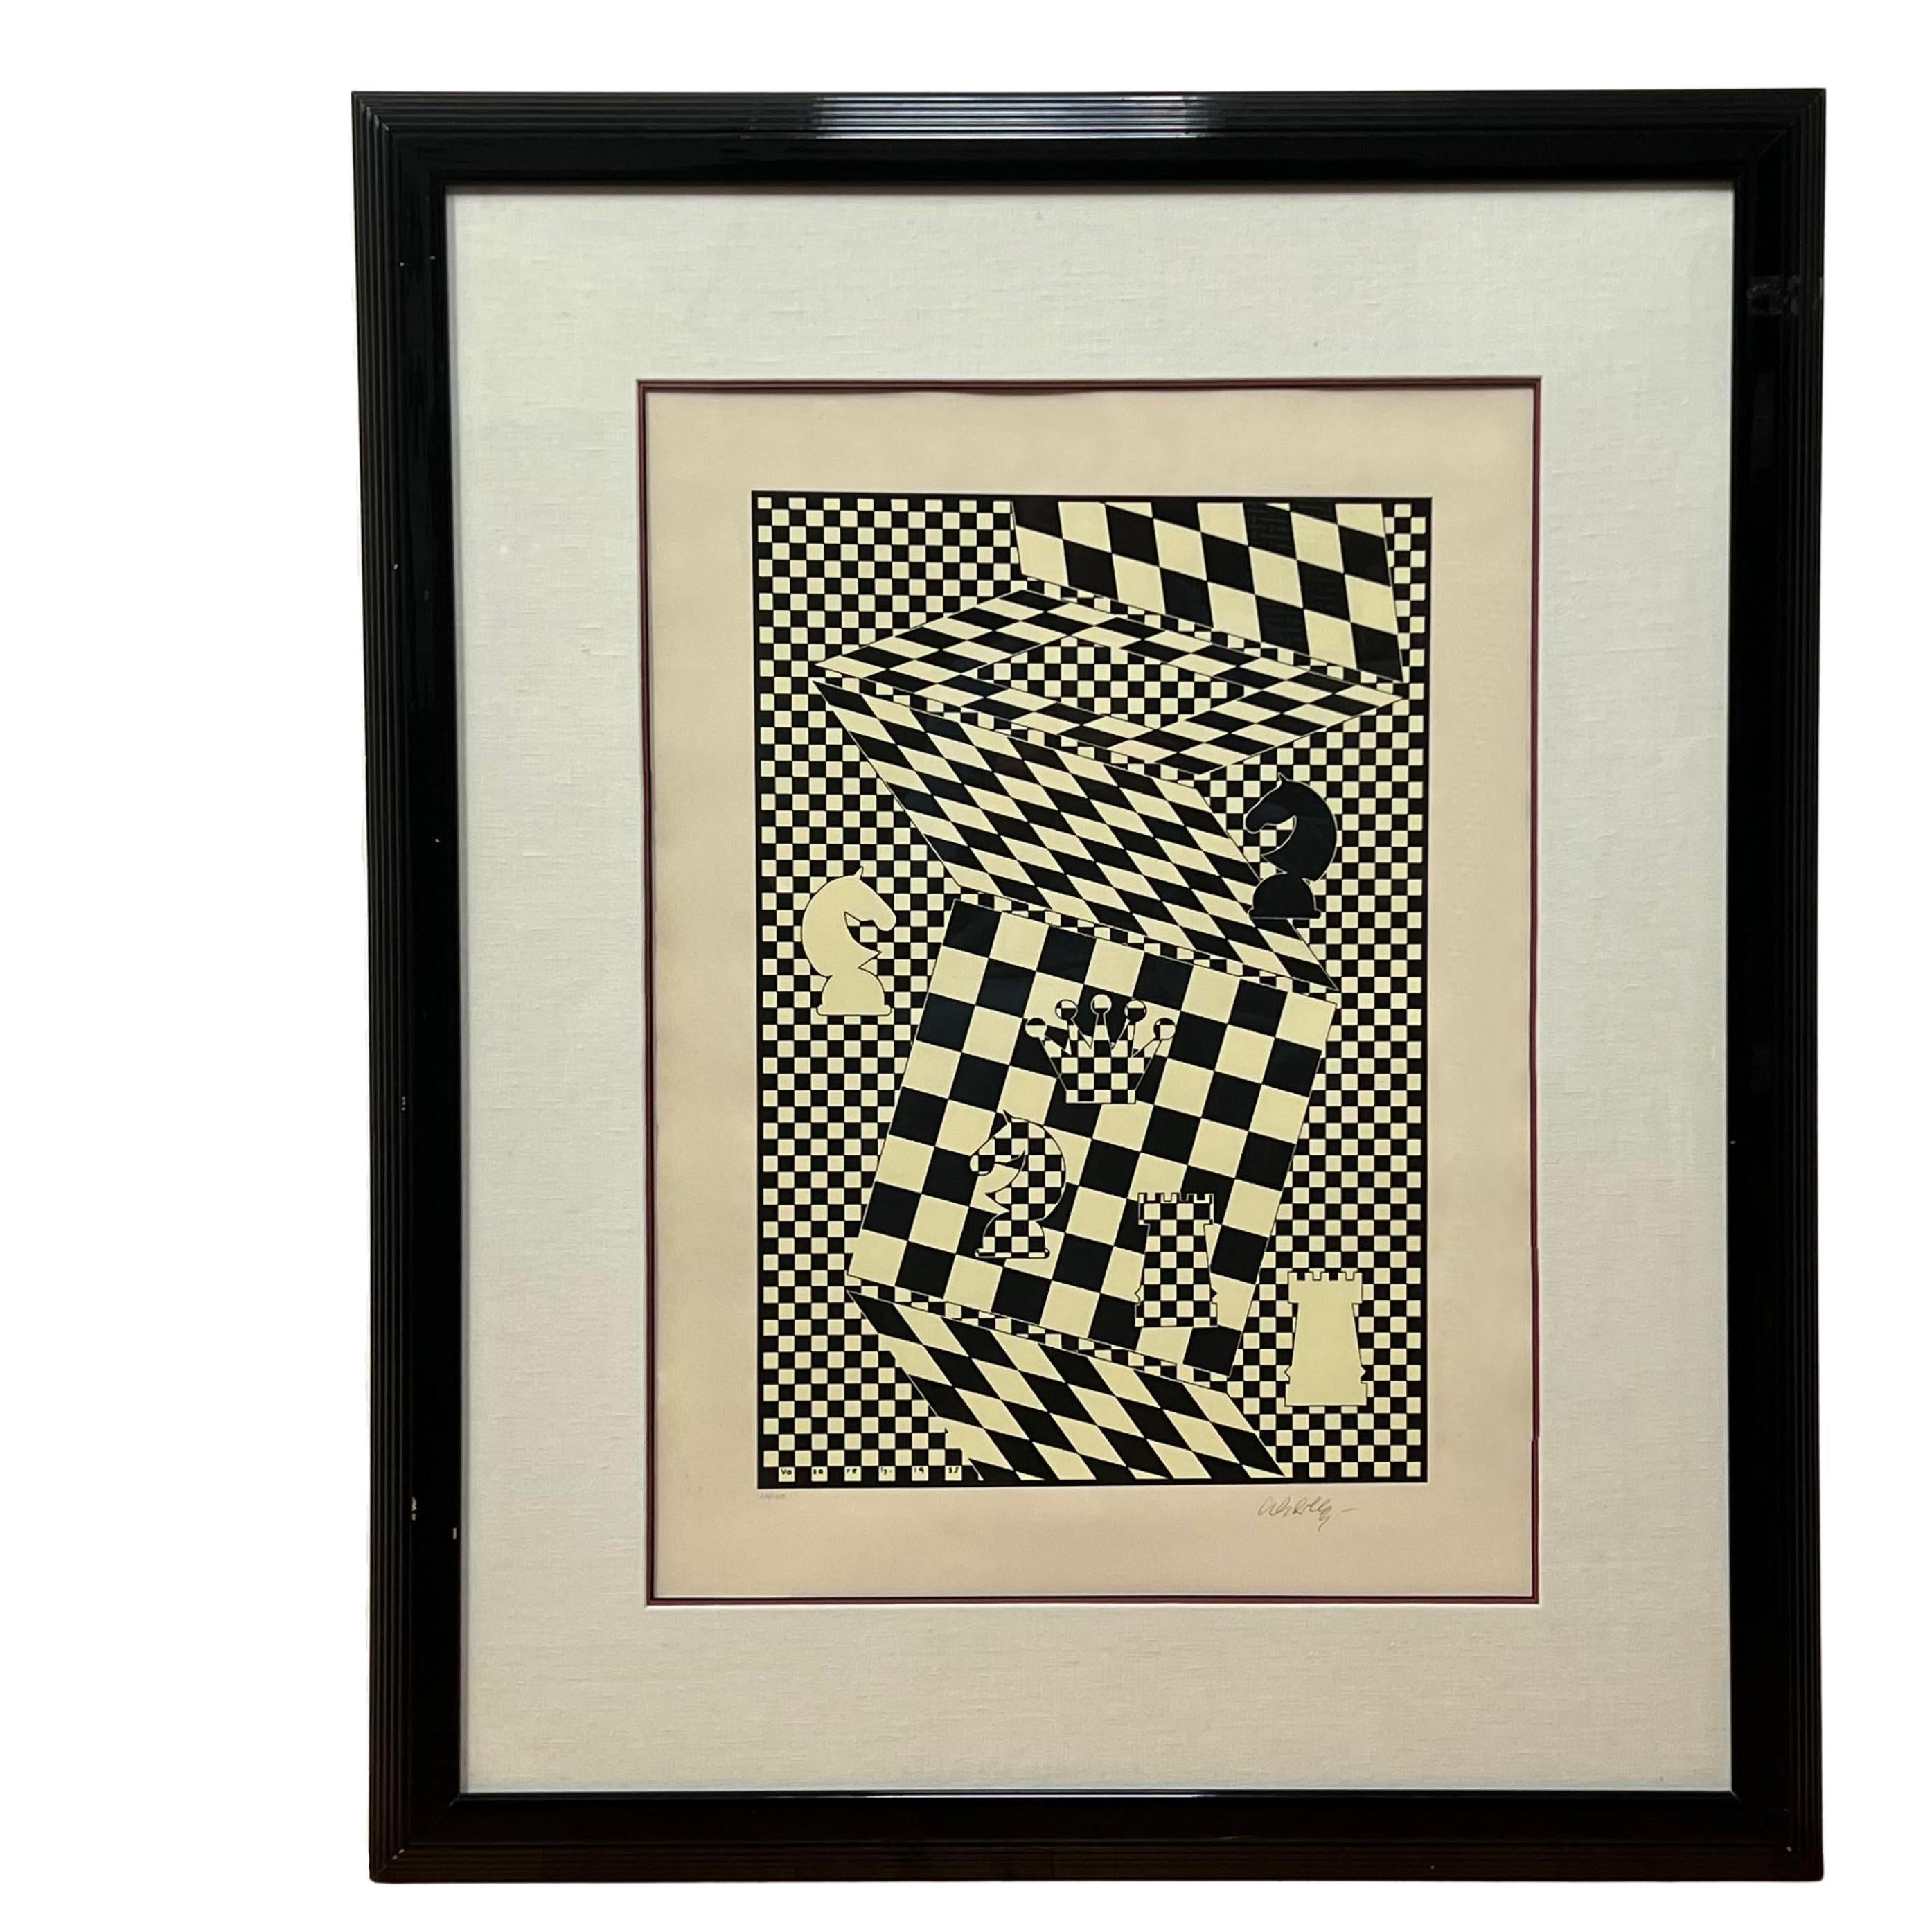 Schwarz-Weiß-Lithographie „L'echiquier“ (Das Schachbrett) von Victor Vasarely 